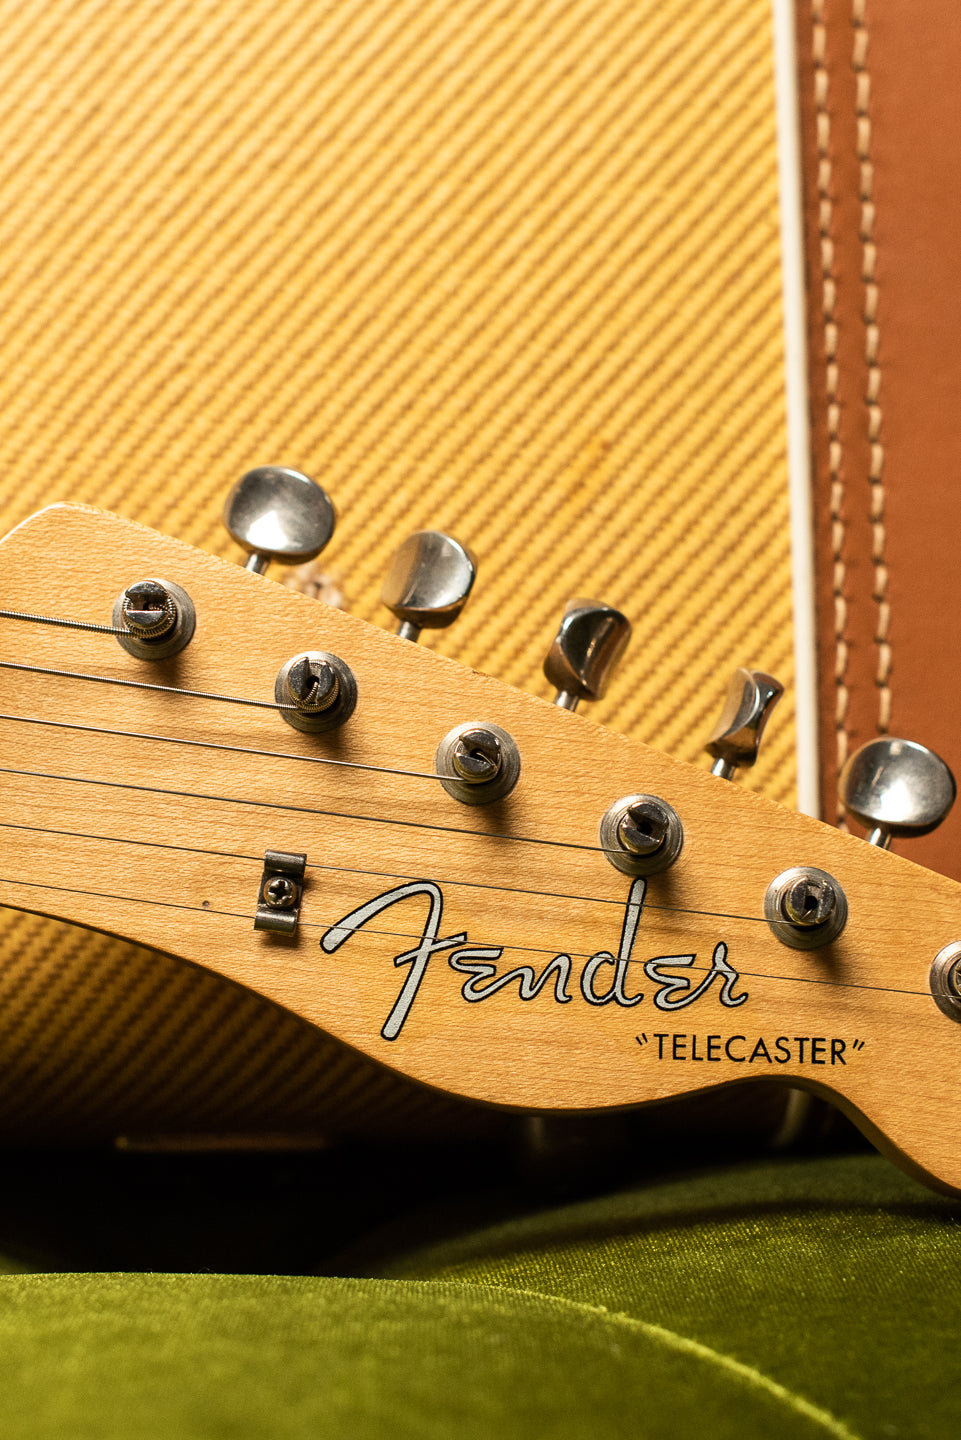 1957 Fender Telecaster Blond headstock, Fender logo